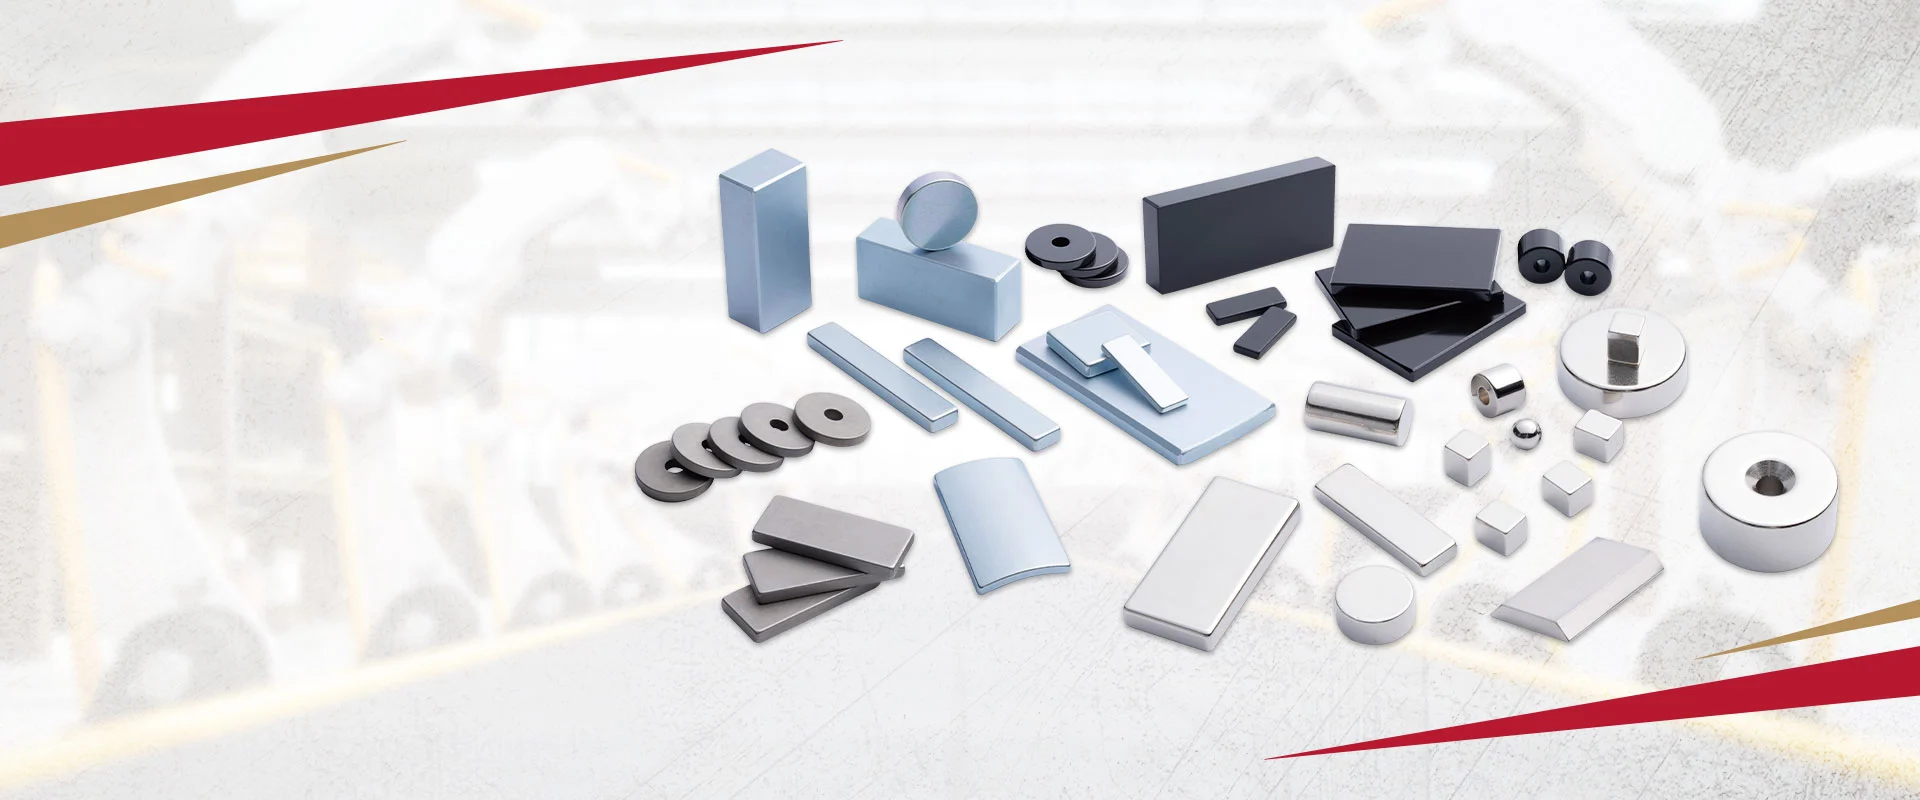 定制钕铁硼磁钢 通过科田卓越的磁钢和组件技术为您的行业及领域赋能。